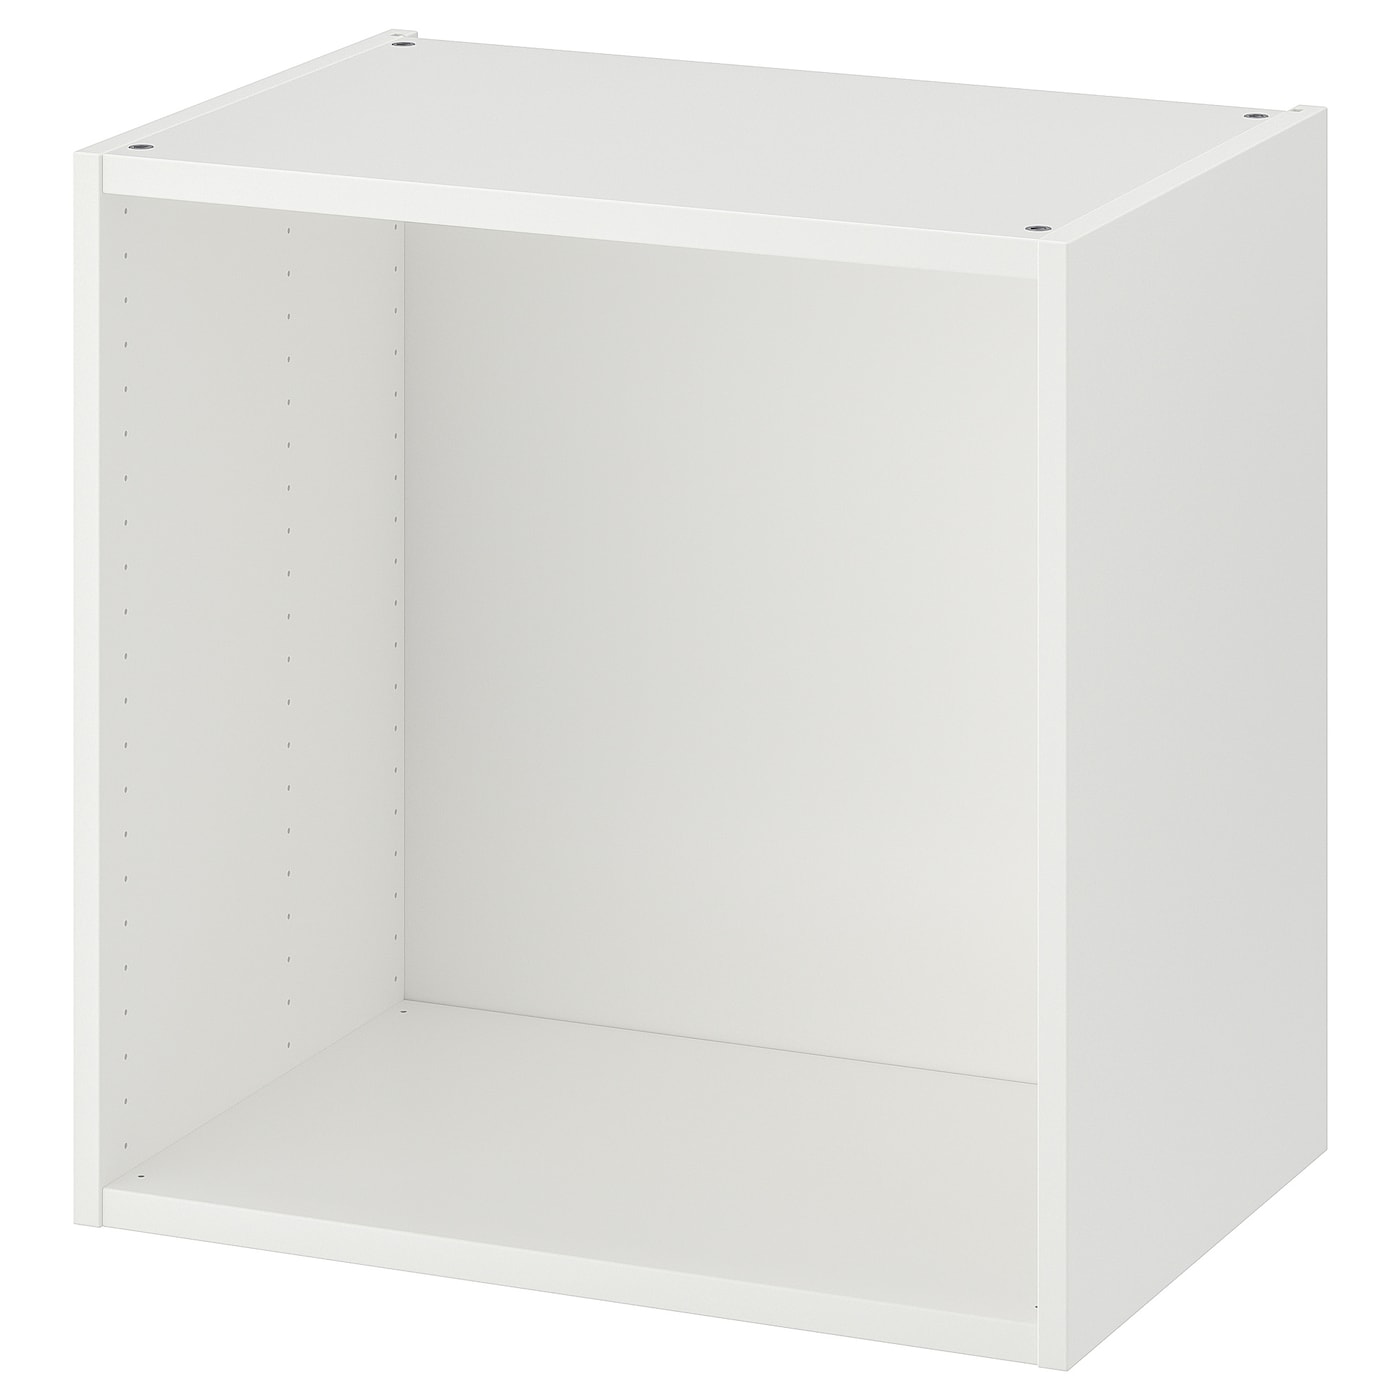 Каркас гардероба - PLATSA IKEA/ПЛАТСА ИКЕА, 60х40х60 см, белый